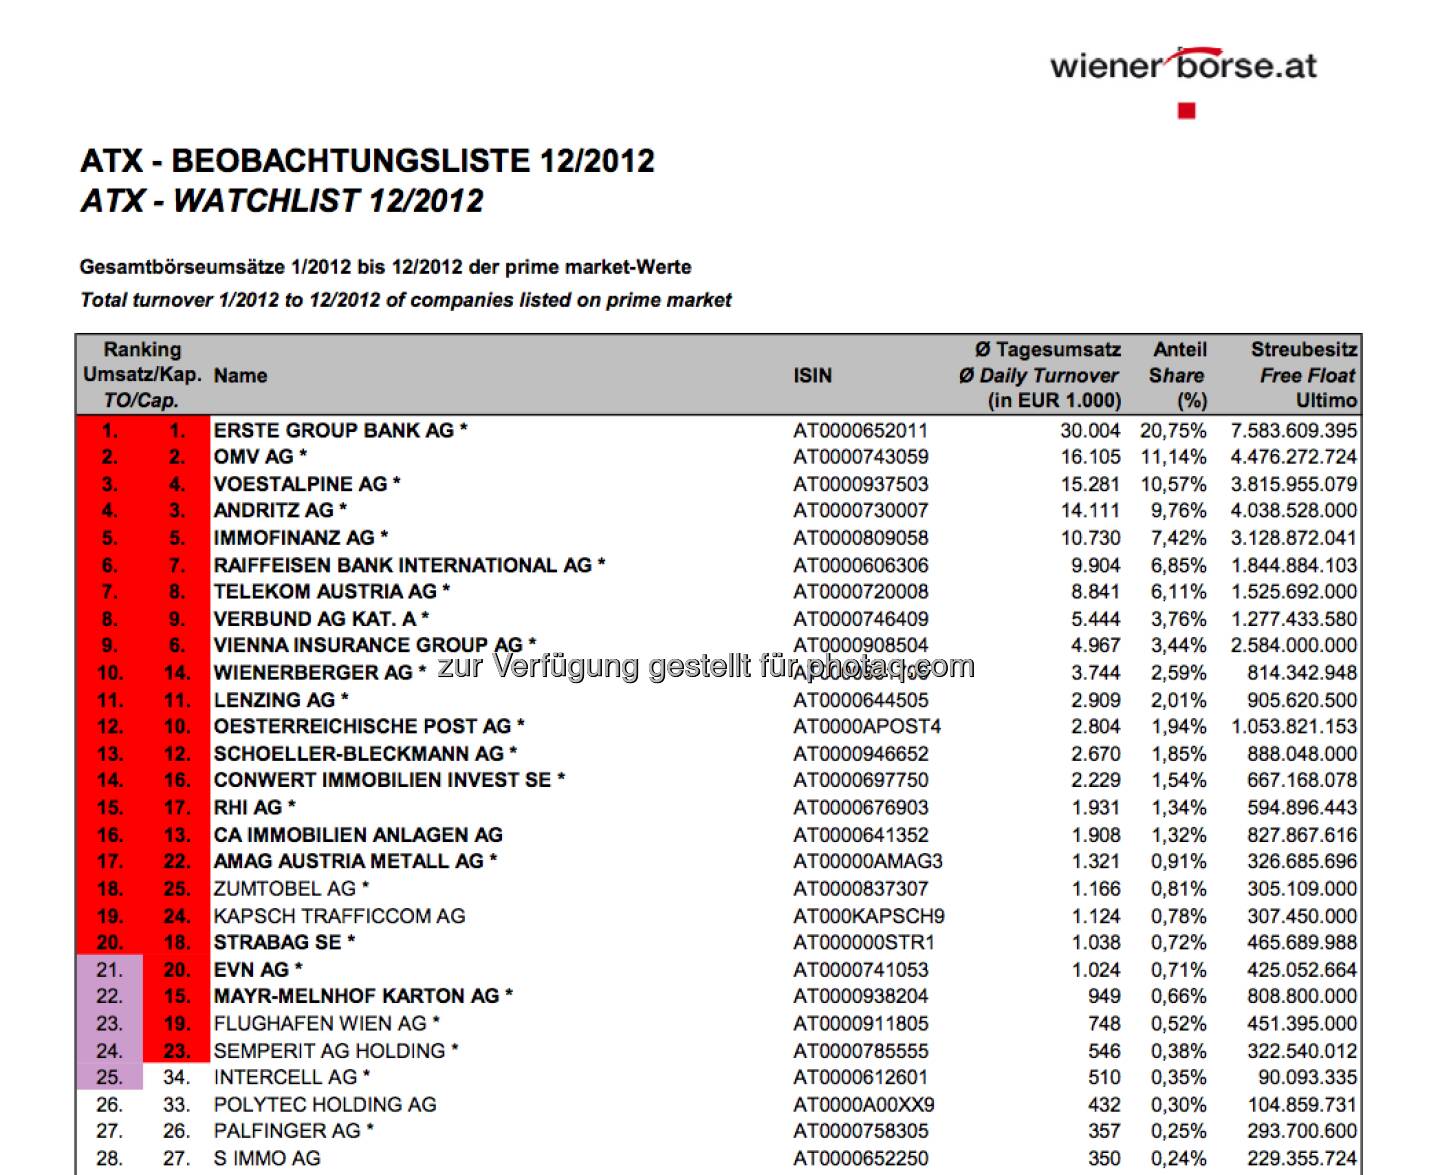 ATX-Beobachtungsliste 12/2012 ist da. Aktuell wären Zumtobel und Kapsch im Index, die beiden Nicht-ATX-Mitglieder  haben mehr Umsätze als die ATX-Mitglieder Mayr-Melnhof und EVN. Man muss aber bei der Cap ebenfalls unter den Top25 liegen: Und Kapsch rangiert auf Platz 24, Zumtobel auf Rang 25. Es gibt aber nur einen Angreifer: Palfinger (selbst ohne ATX-Chance) (c) Wiener Börse